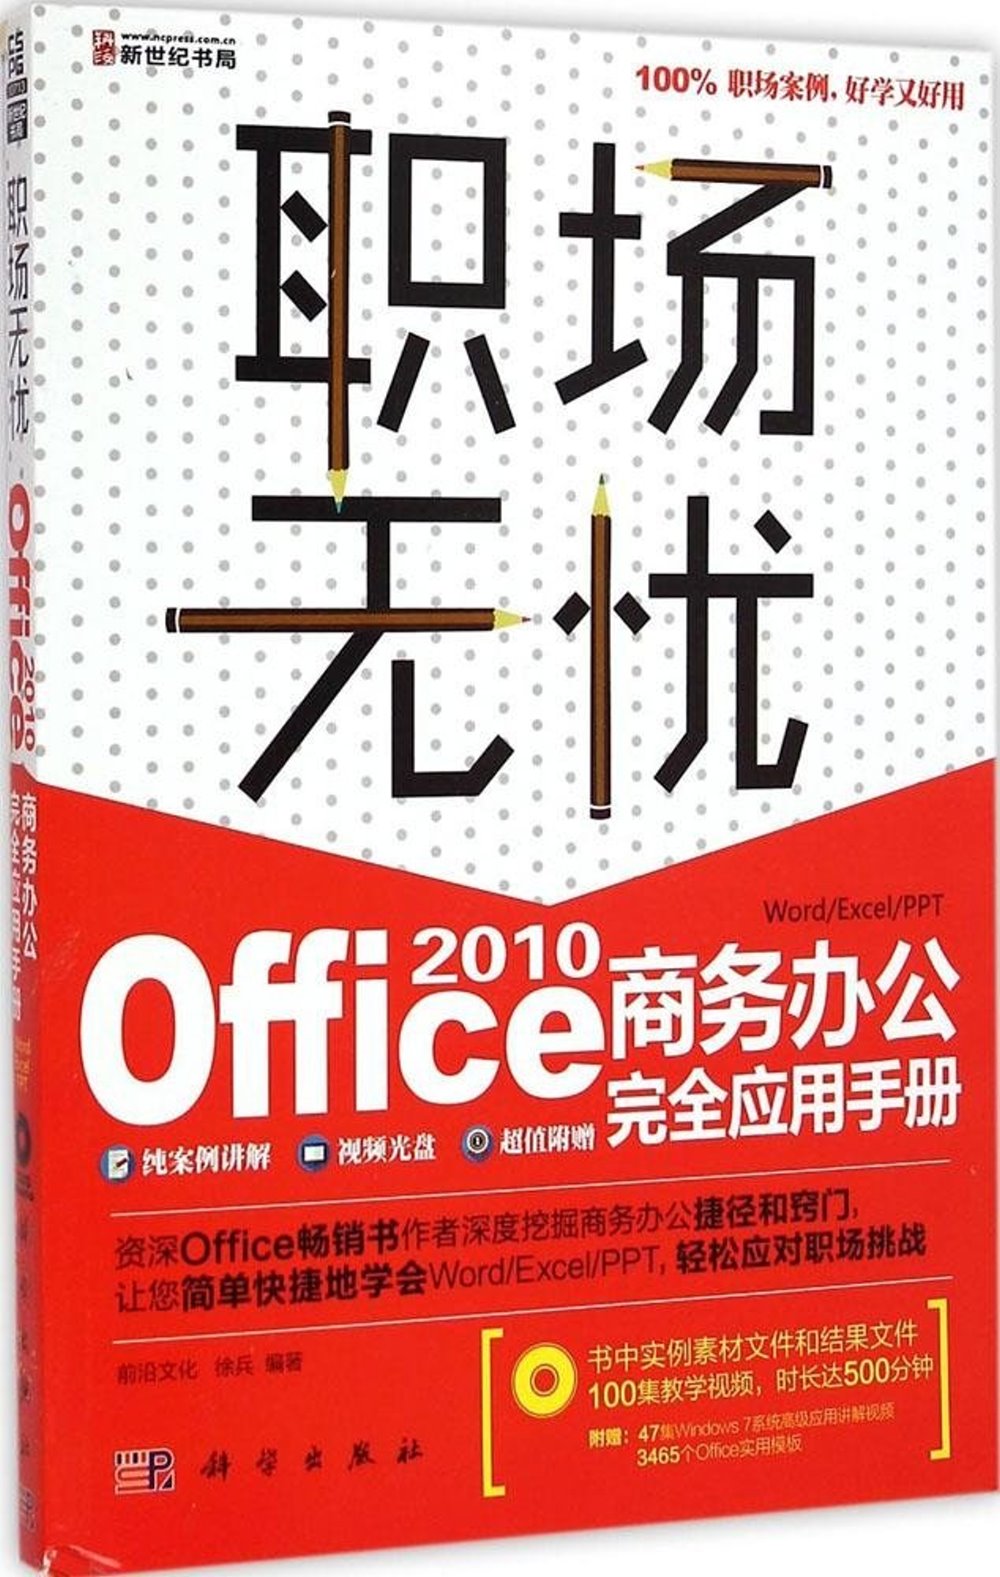 職場無憂-Office 2010商務辦公完全應用手冊(1DVD)